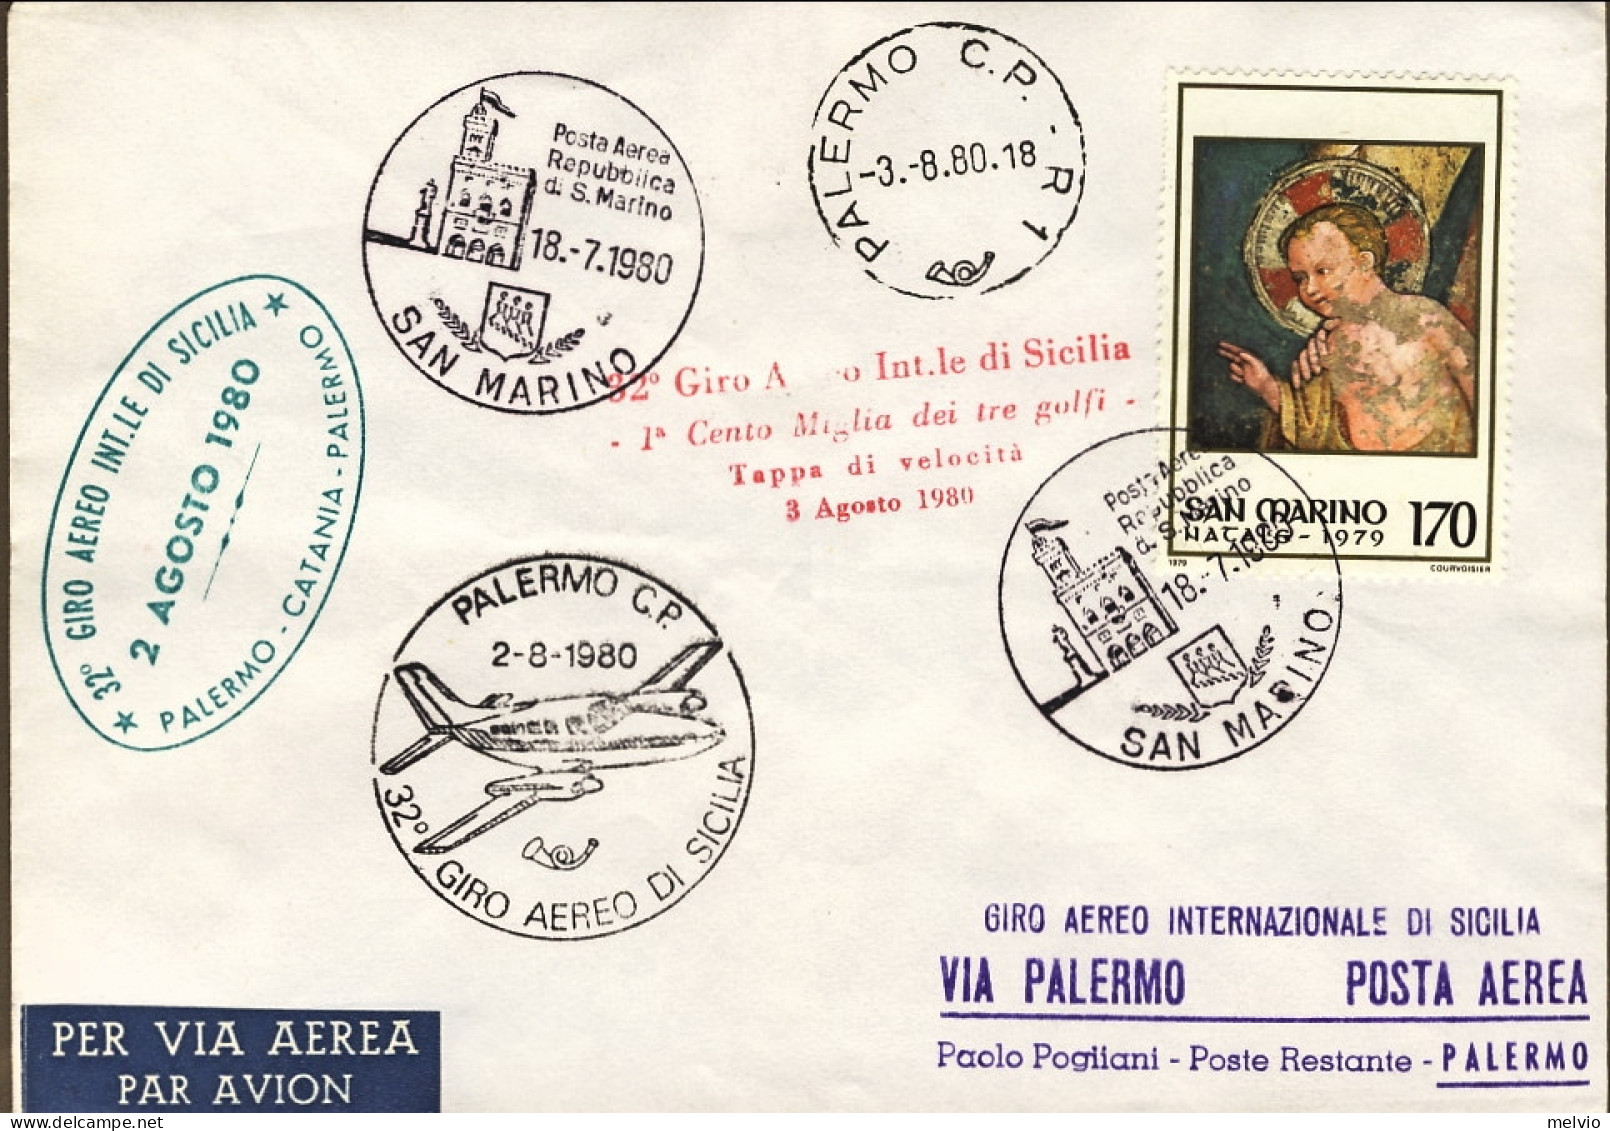 San Marino-1980 XXXII^Giro Aereo Internazionale Della Sicilia - Airmail